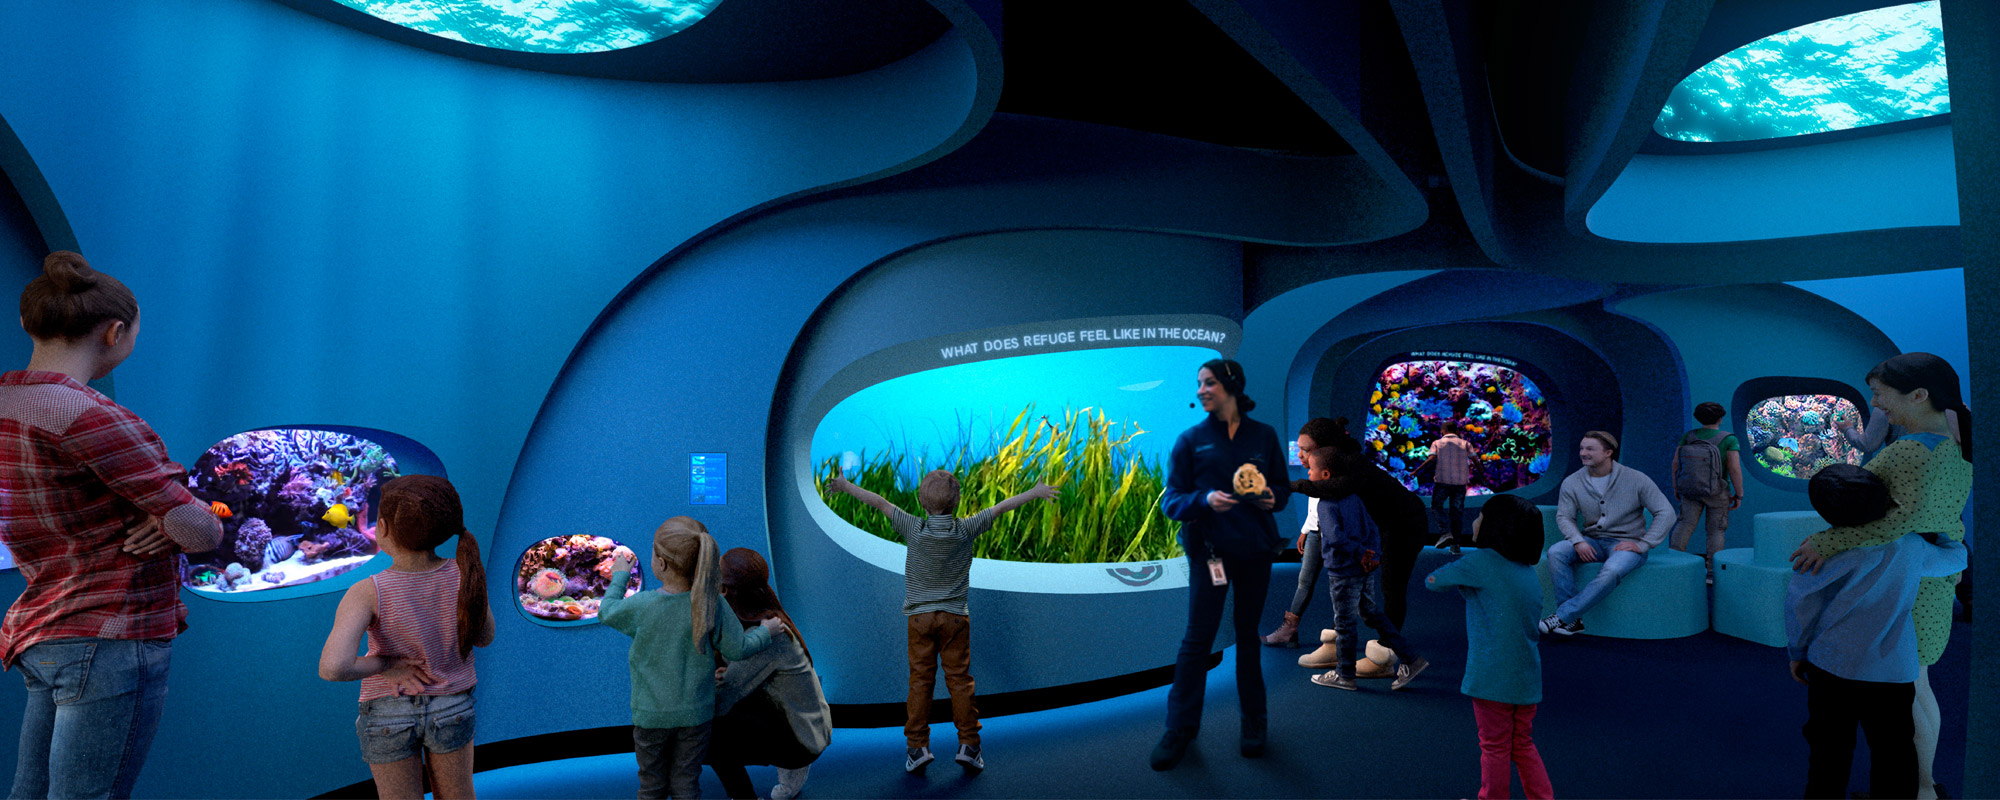 https://lmnarchitects.com/wp-content/uploads/2021/12/Seattle-Aquarium-Ocean-Pavilion_Image-Page-b.jpg